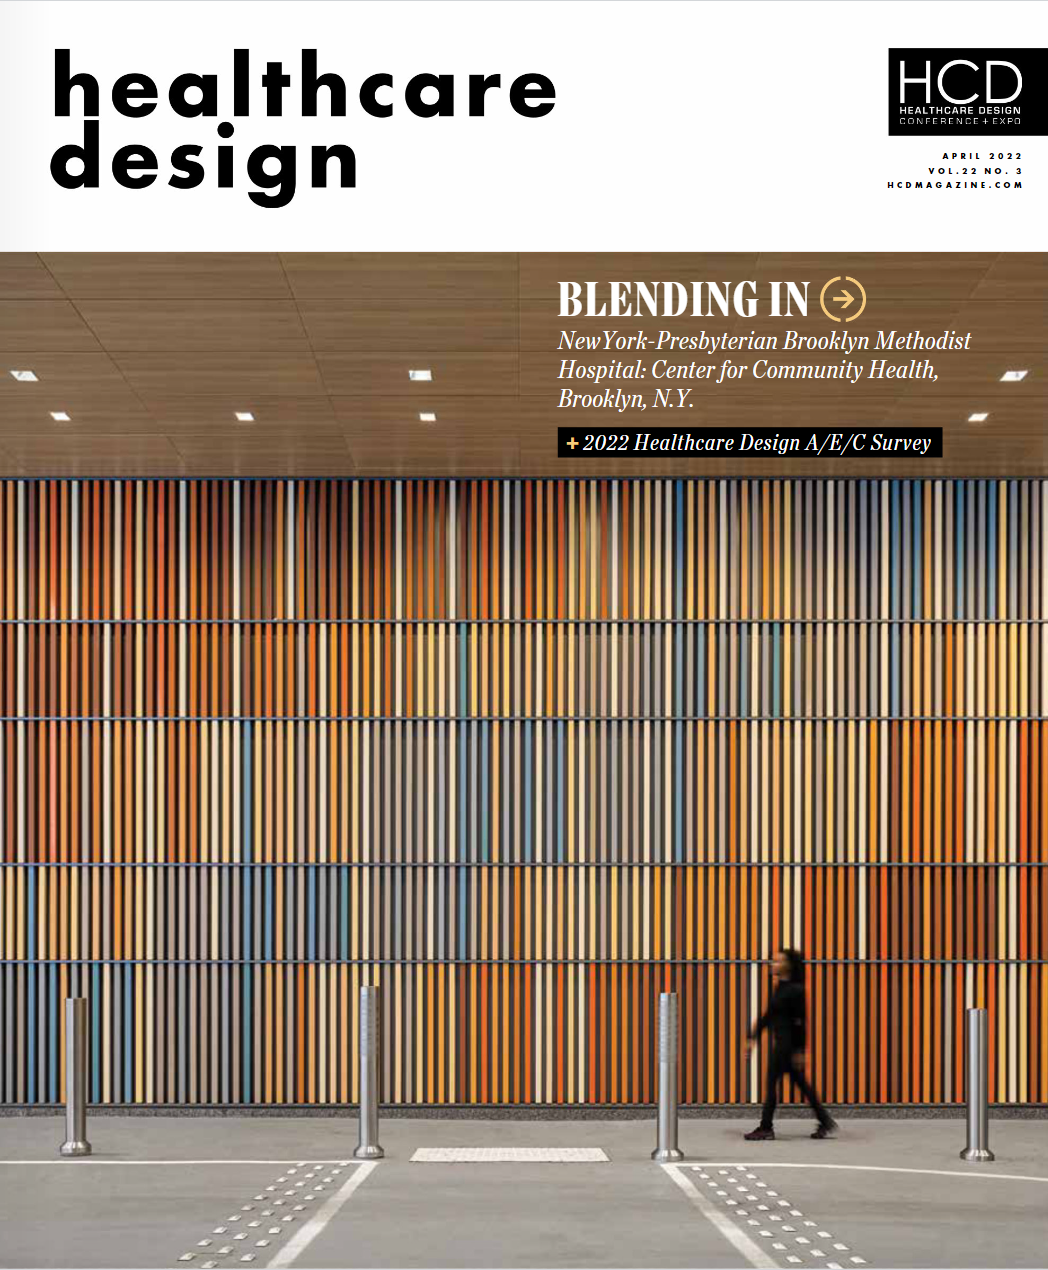 cube-3-architecture-interiors-planning-healthcare-design-magazine